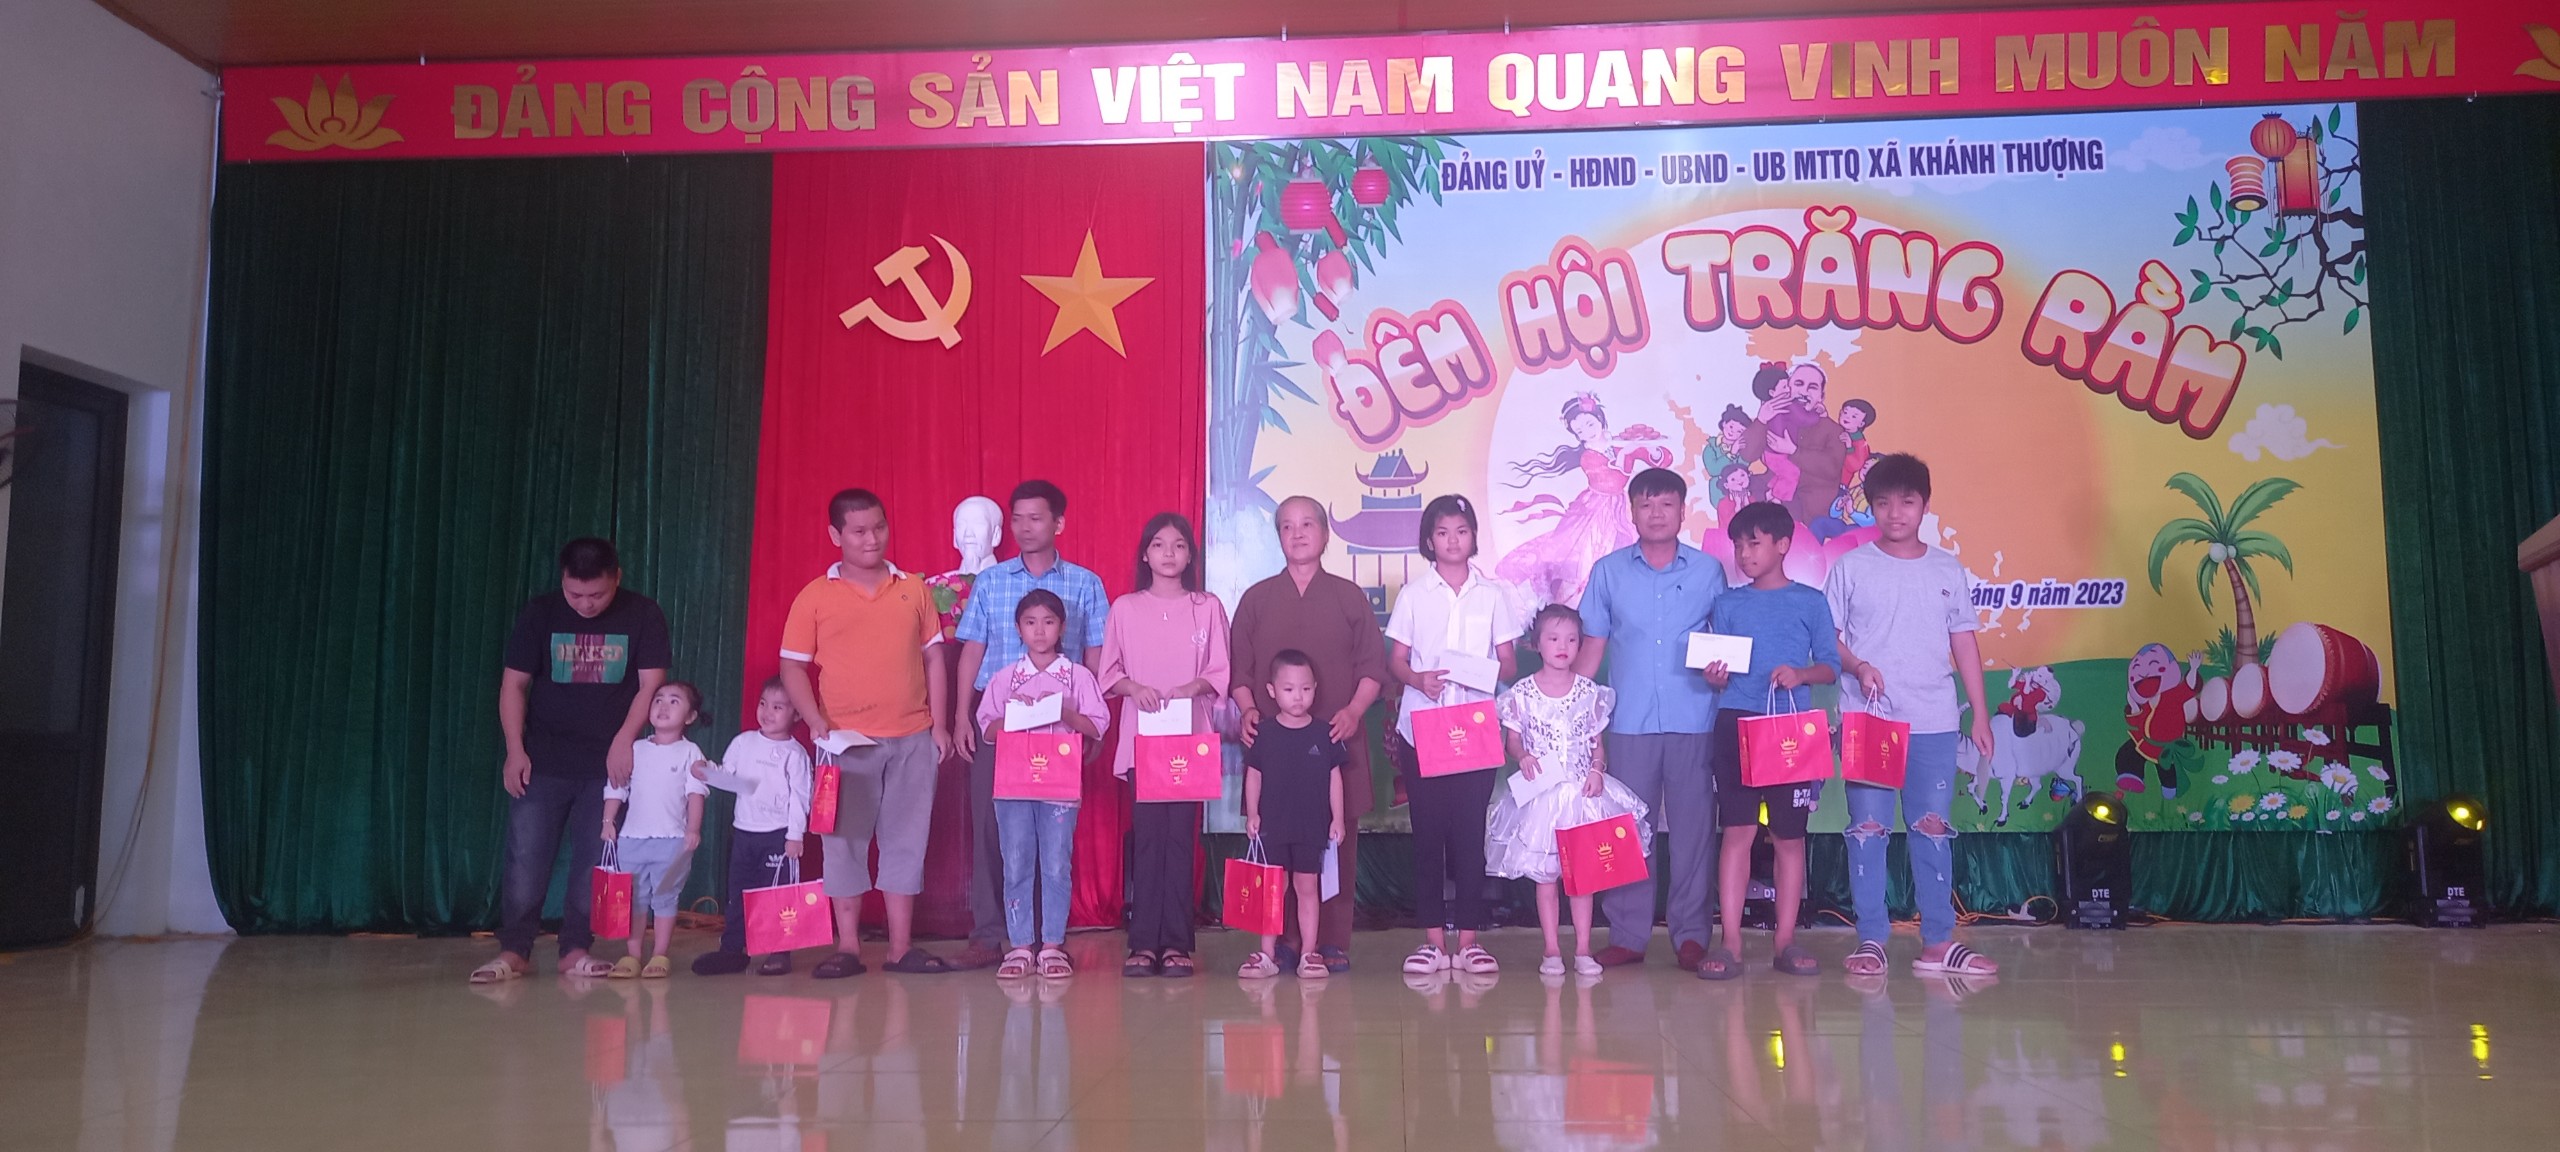 Đảng uỷ - HĐND - UBND –UB MTTQ xã Khánh Thượng đã long trọng tổ chức “Đêm hội trăng rằm” năm 2023 cho các em thiếu niên, nhi đồng trên địa bàn xã